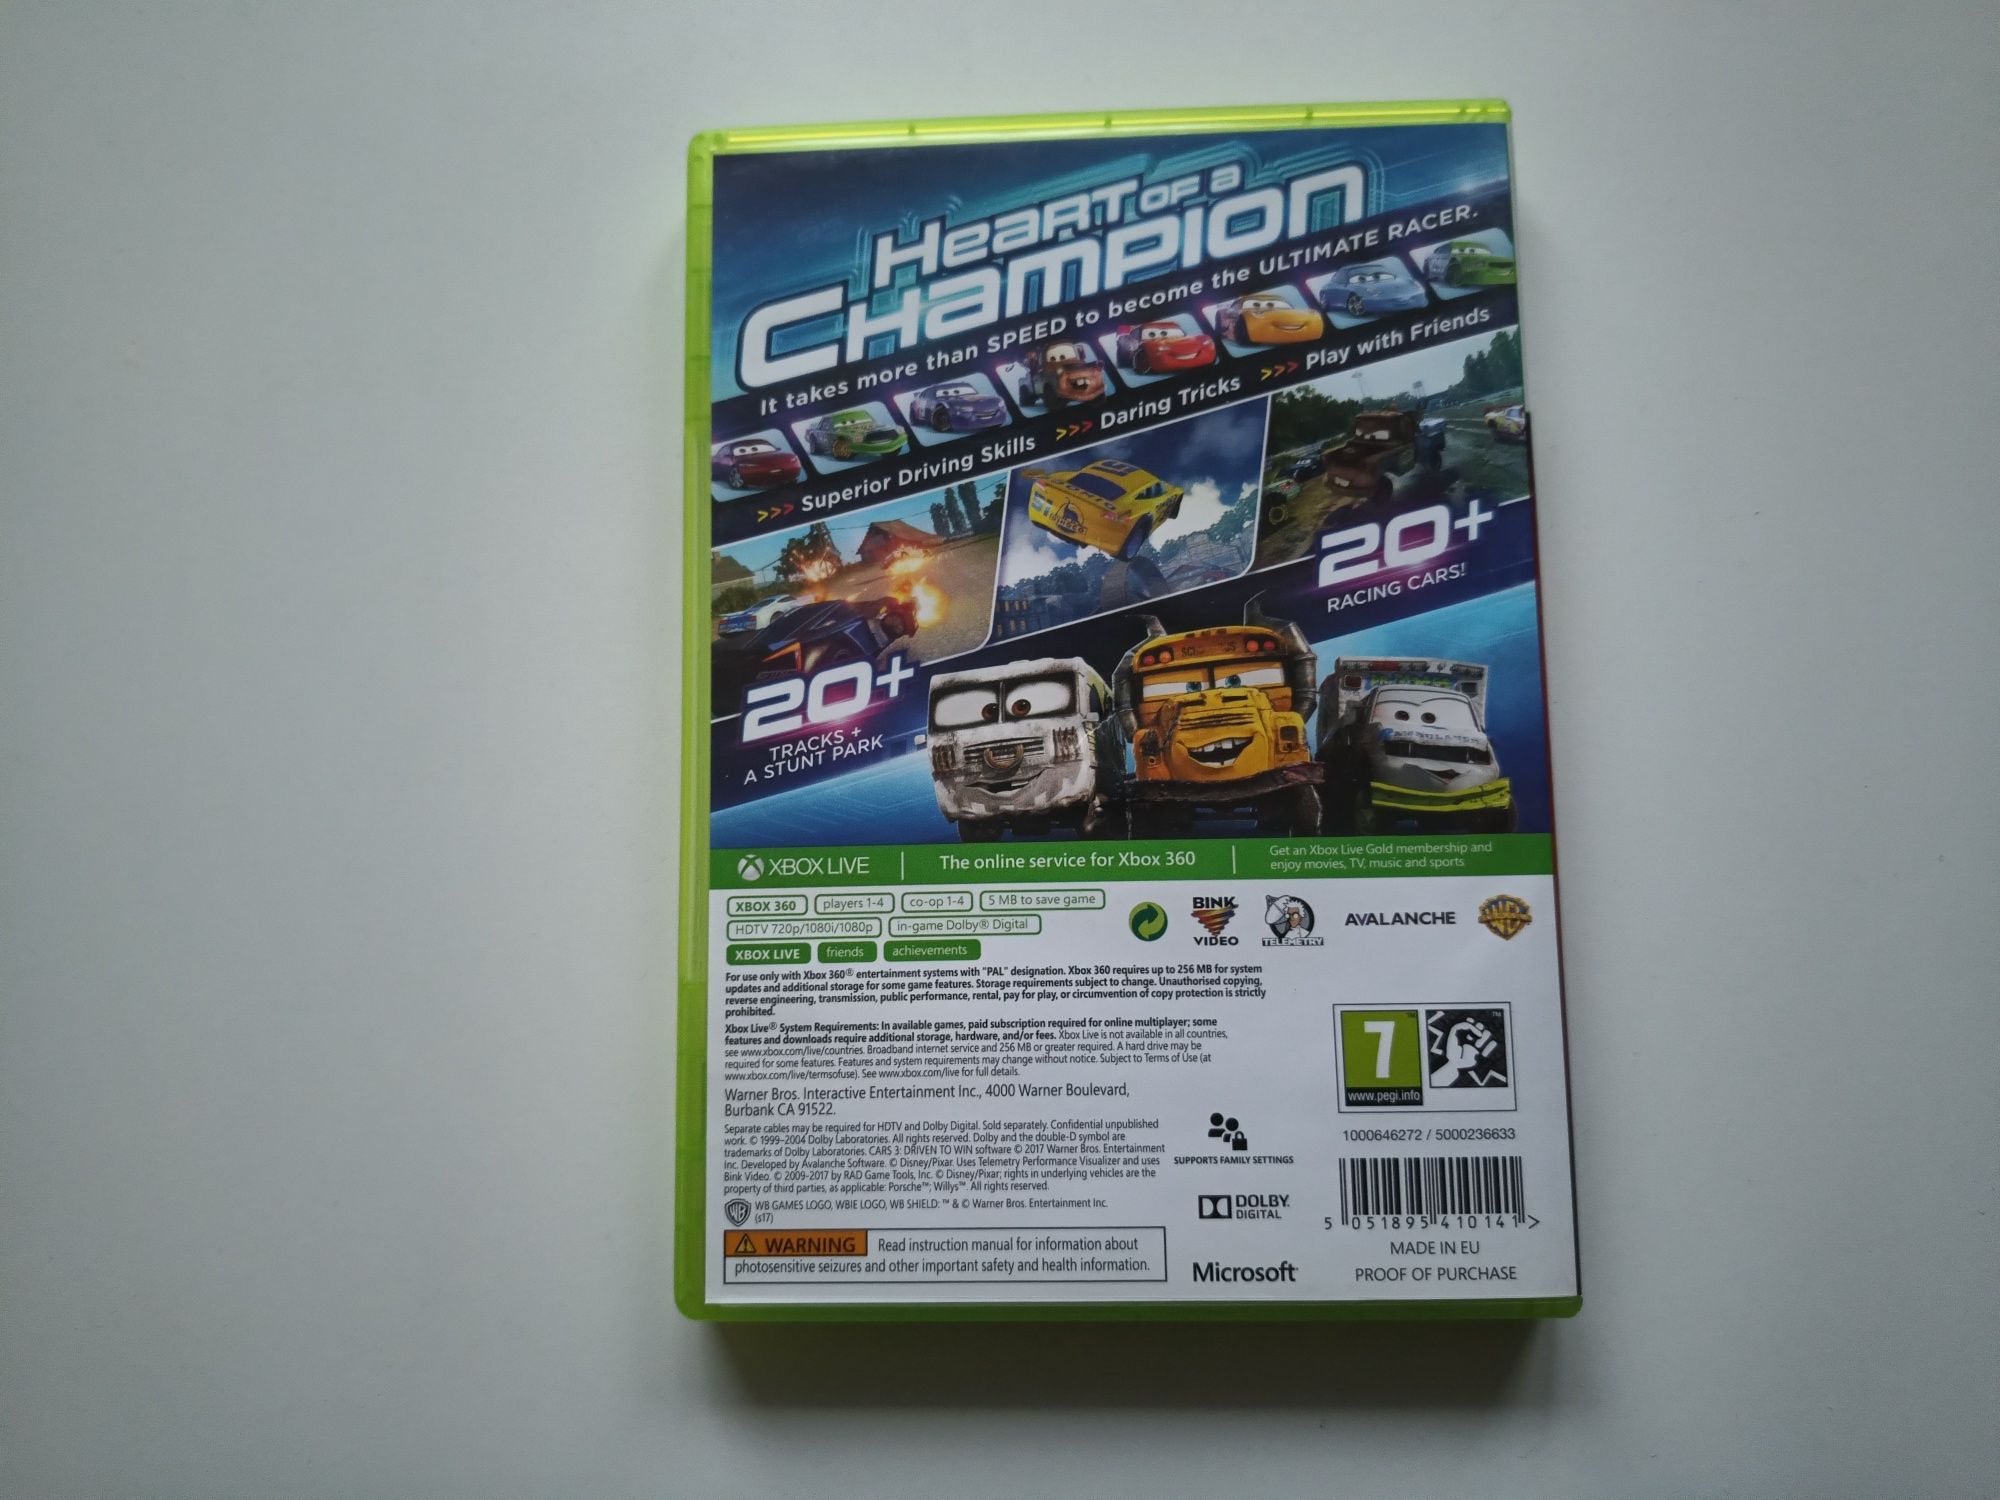 Gra Xbox 360 Auta 3 [Polska wersja]